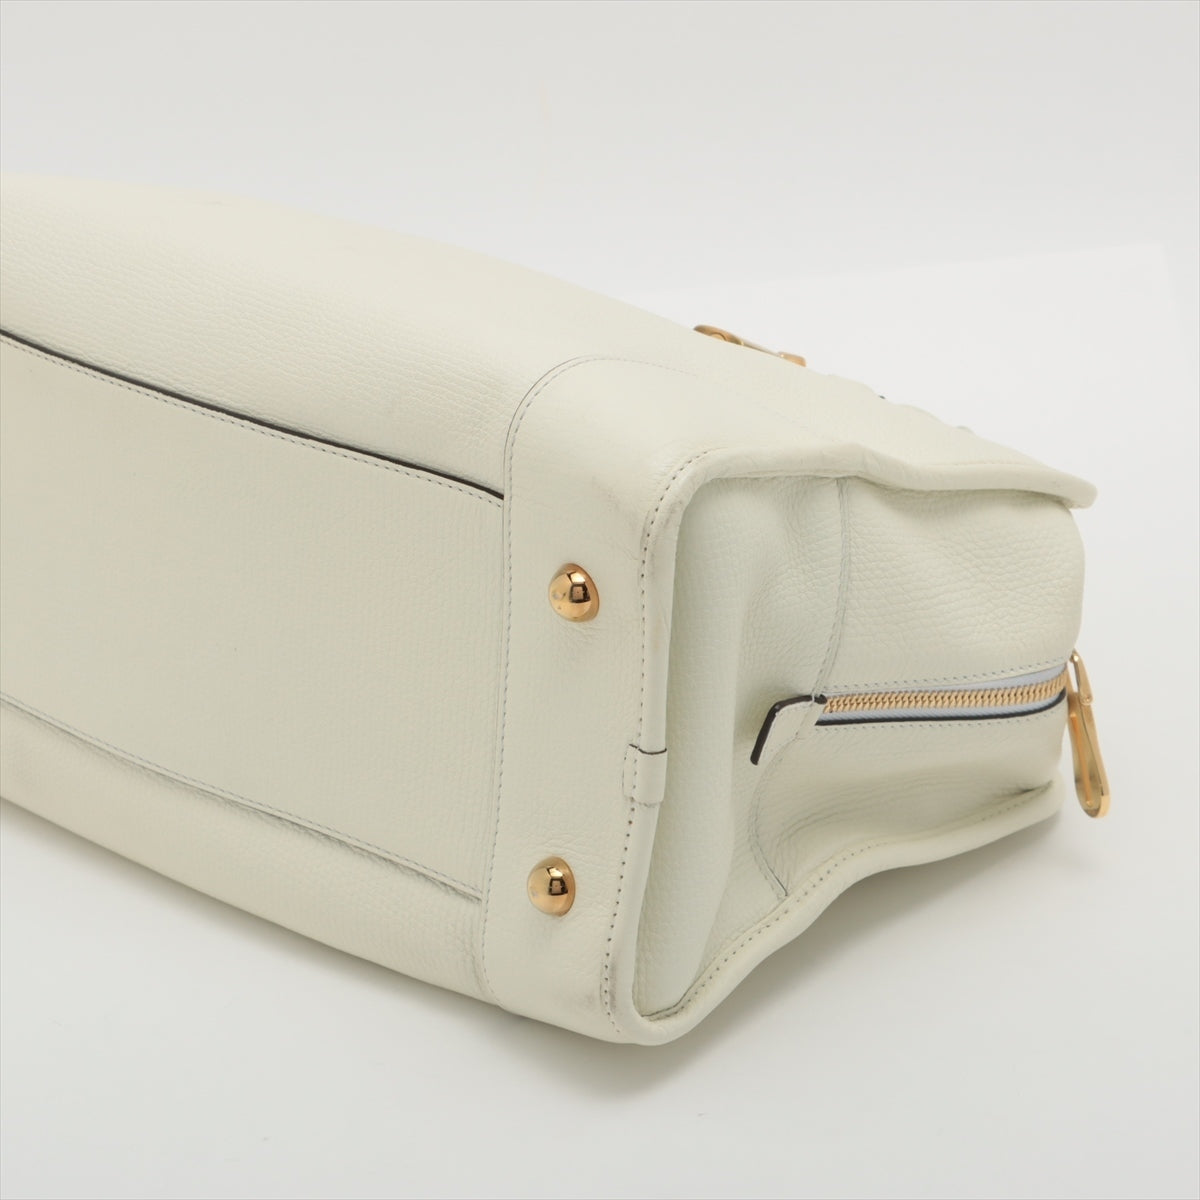 Loewe Amazona 36 Leather Handbag White